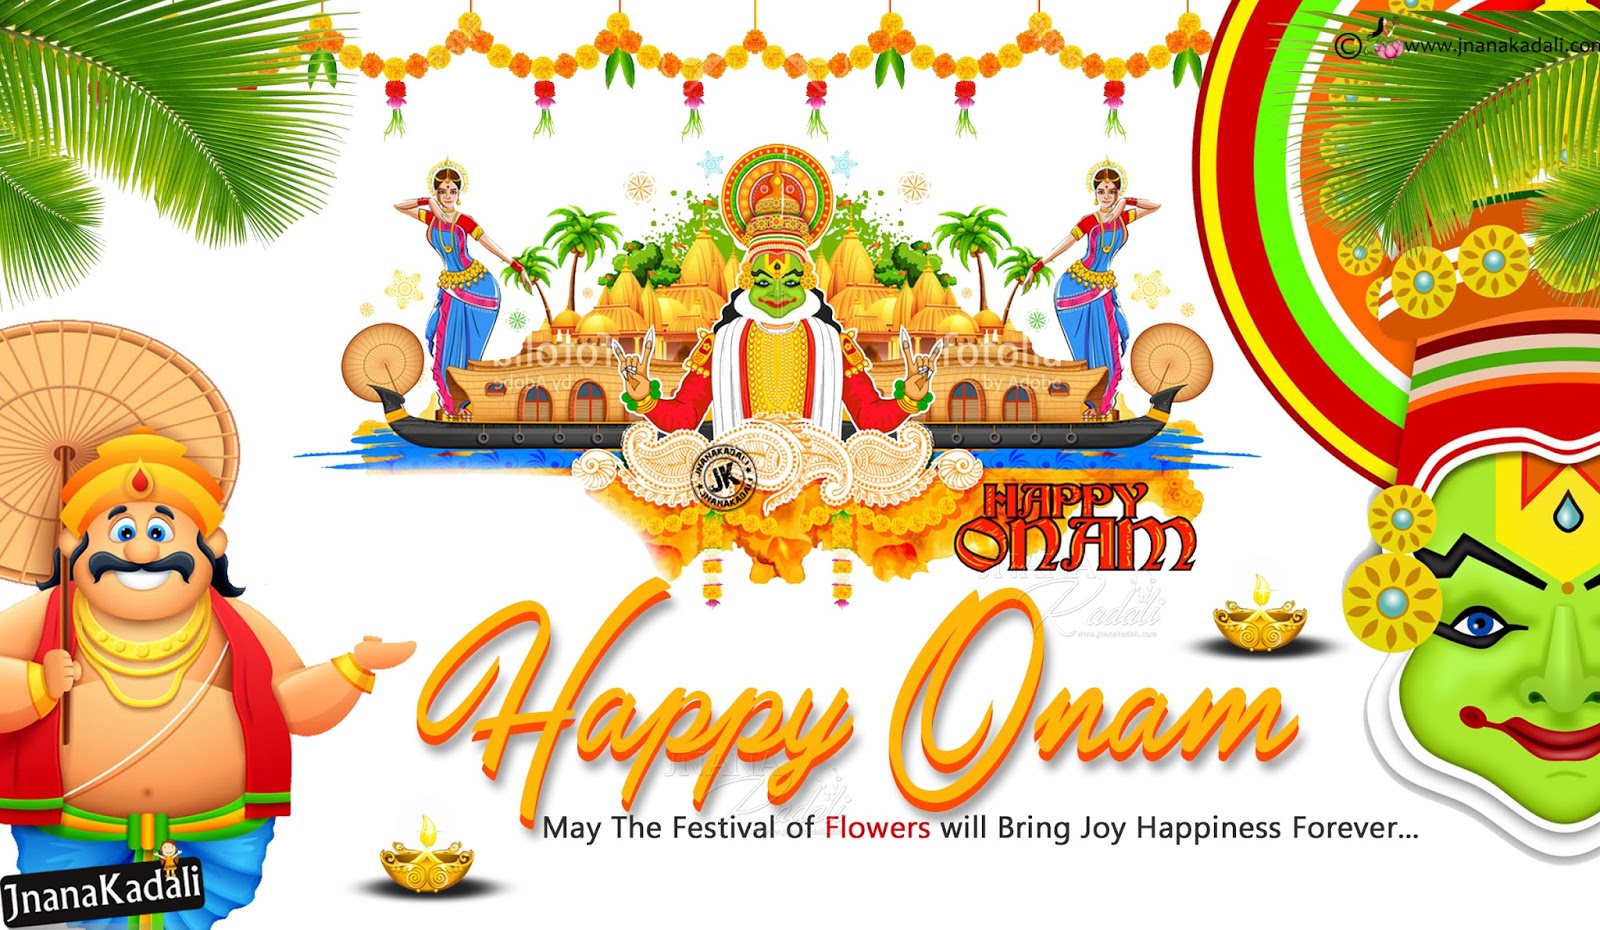 Happy Onam Greetings Wallpapers, Best Onam Greetings - Onam Wallpapers Free  Download - 1600x930 Wallpaper 